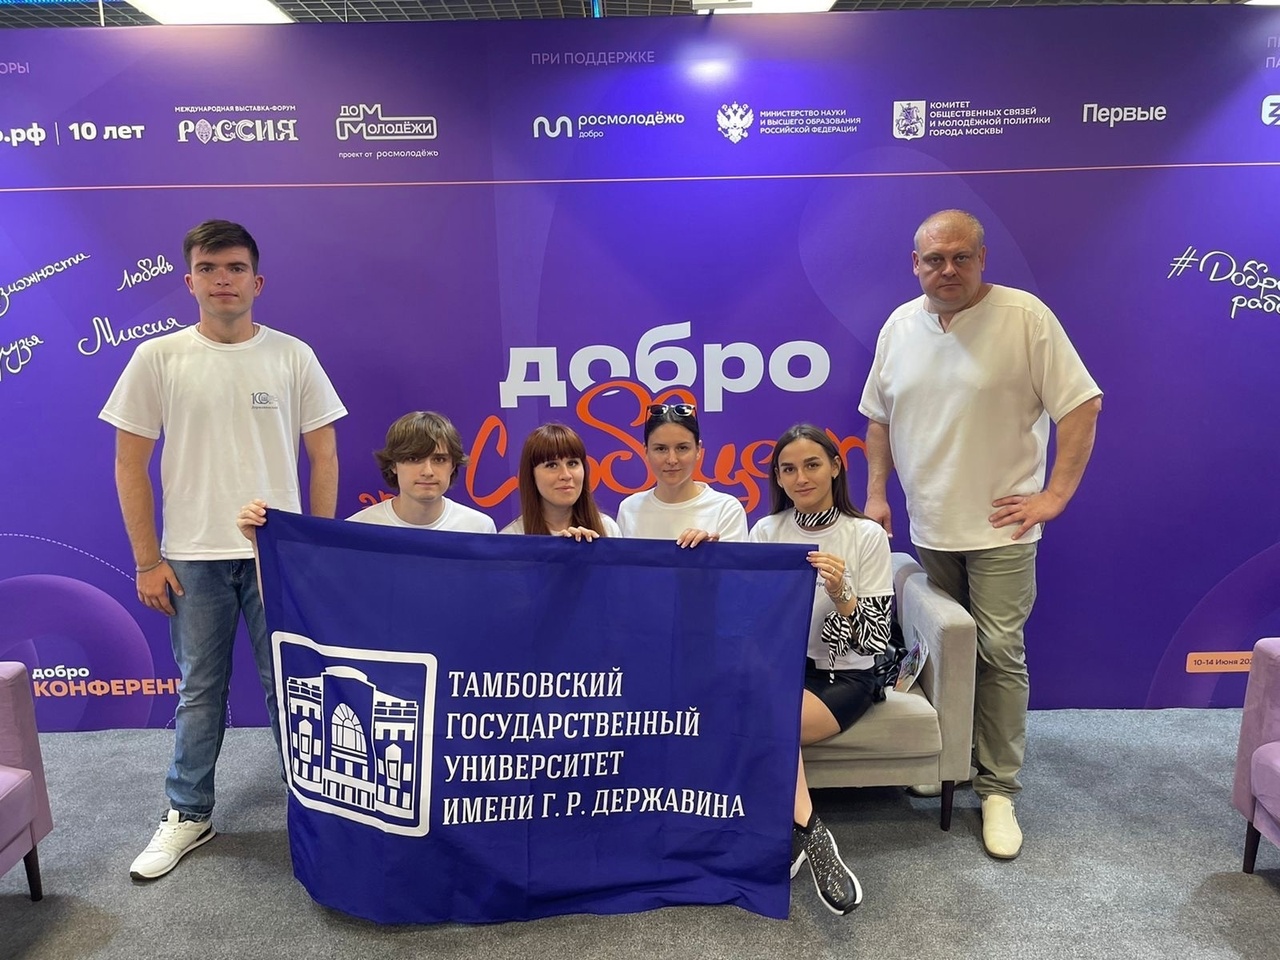 Студенты Державинского – участники молодежной программы IV Российского туристического форума «Путешествуй!» фото анонса